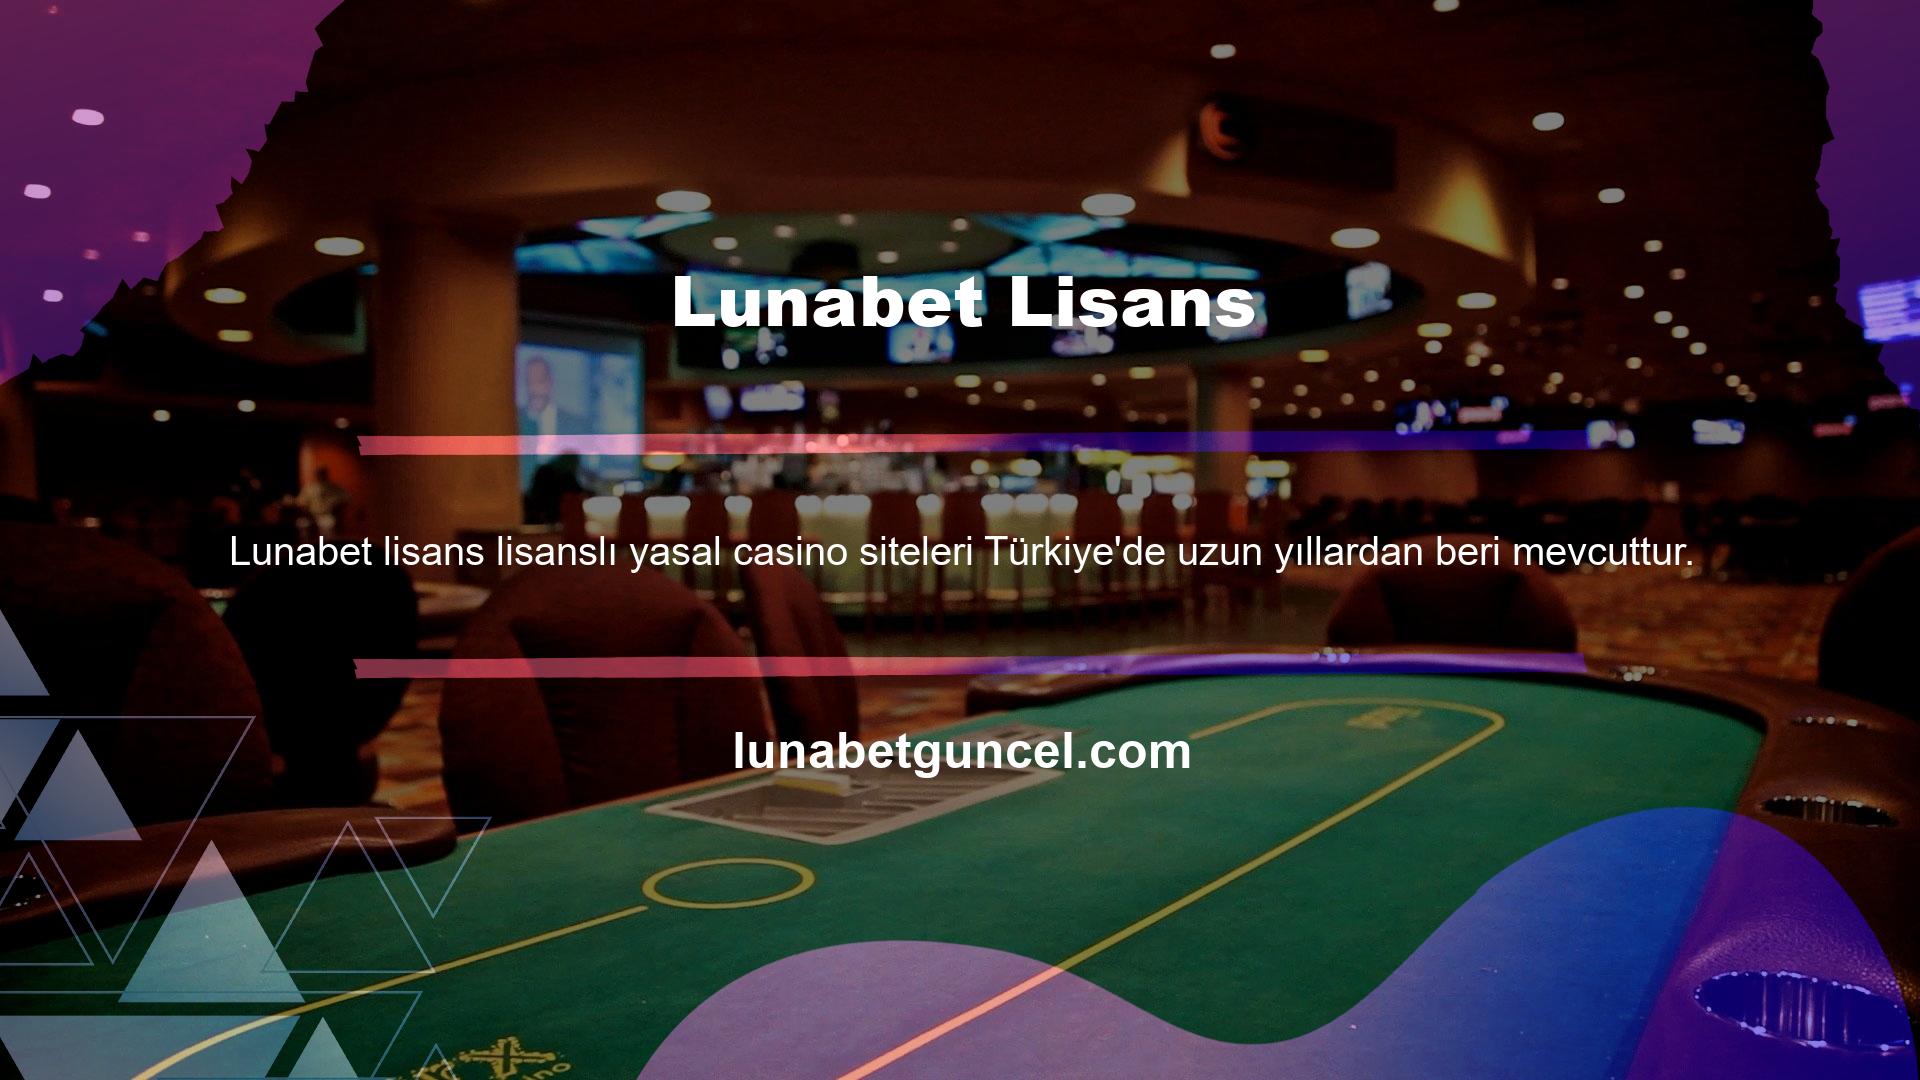 Ancak lisanslı şirketlerin casino kategorisinde hizmet sunması mümkün değildir